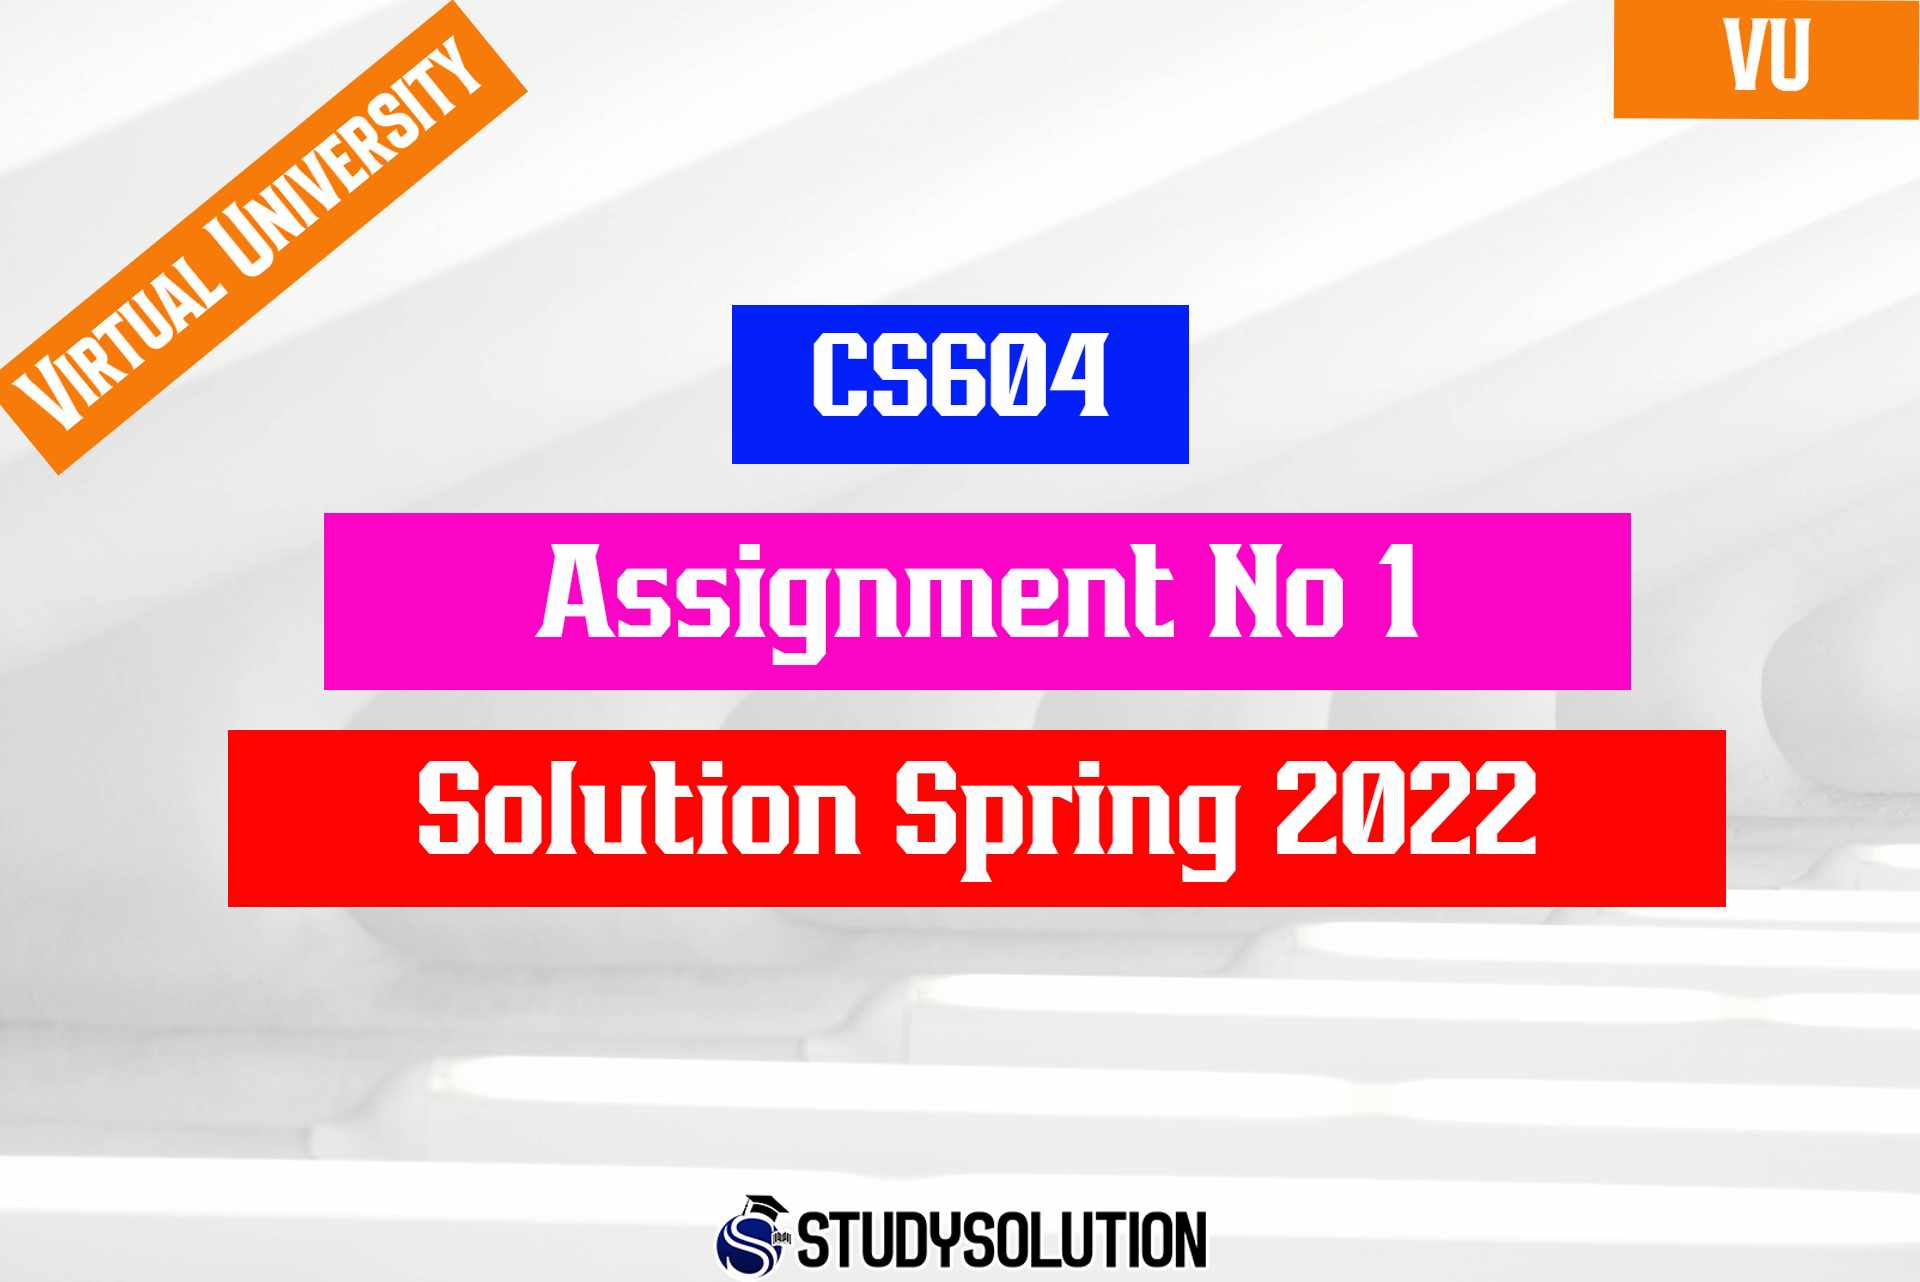 CS604 Assignment No 1 Solution Spring 2022